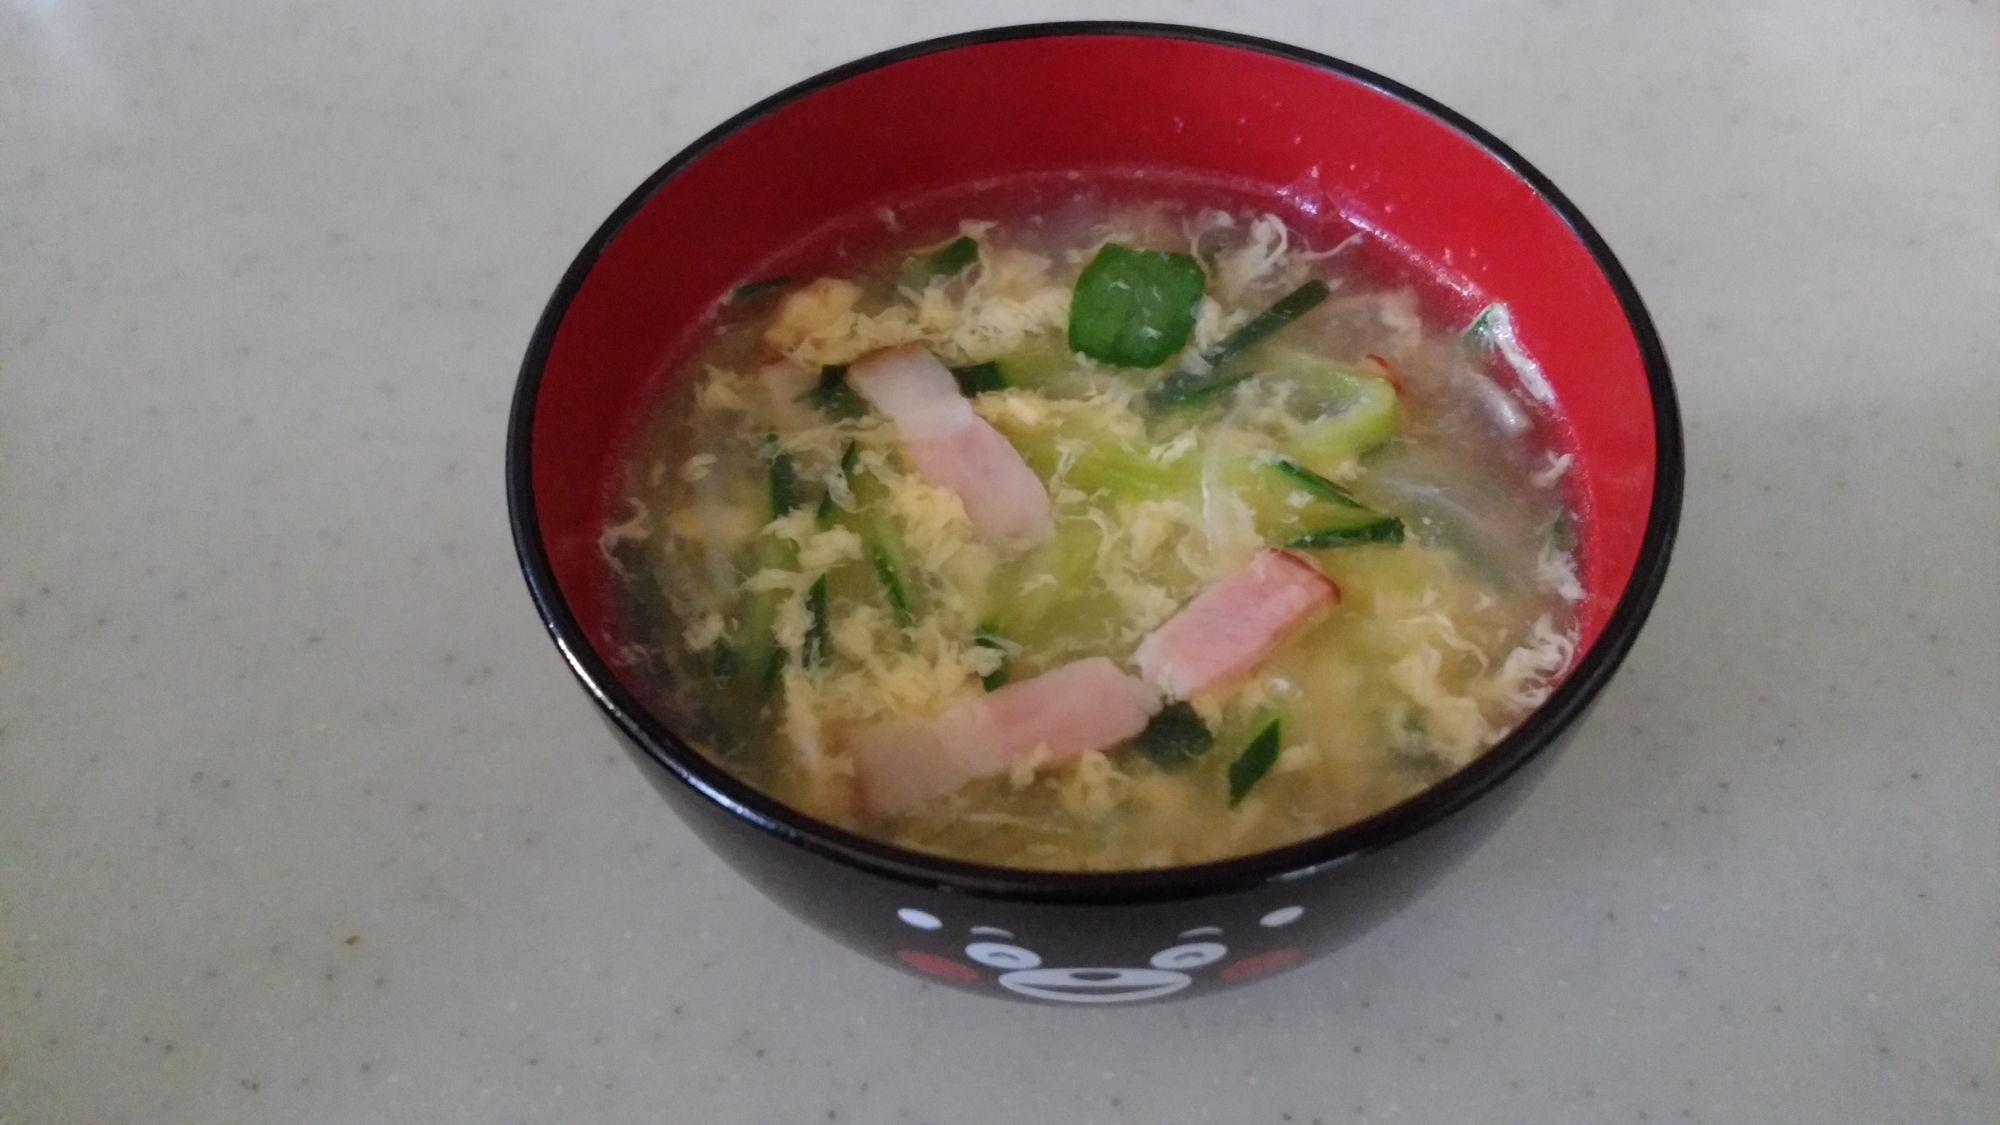 きゅうりの中華風スープ